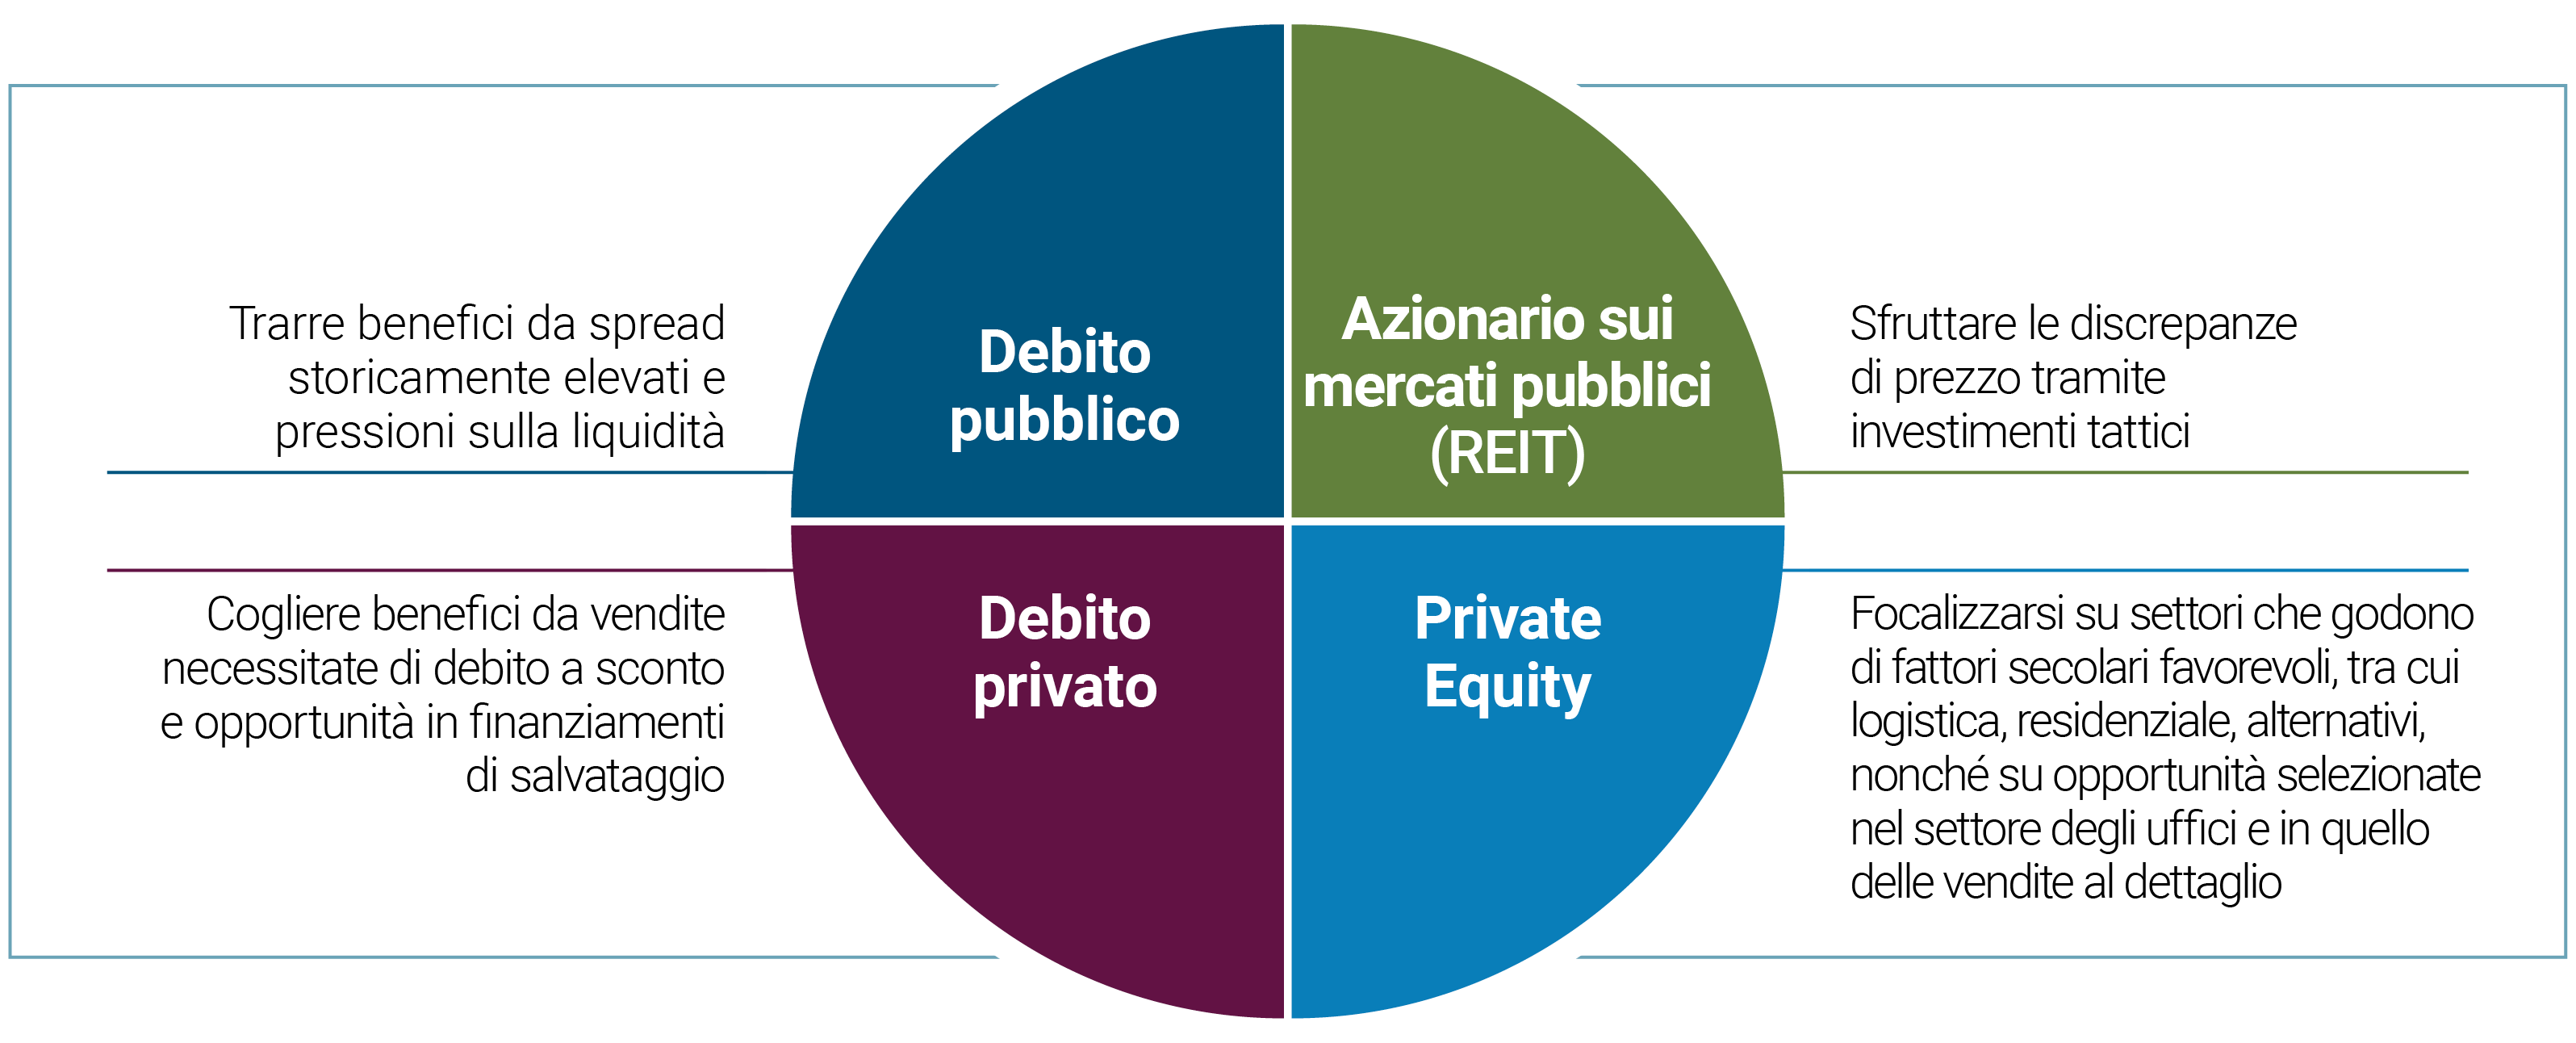 La Figura 1 evidenzia il potenziale di maggiori rendimenti ricercando relative value nei quattro quadranti di investimento: debito sui mercati pubblici, azionario sui mercati pubblici (REIT), debito sui mercati privati e azionario sui mercati privati. Nel debito sui mercati pubblici puntiamo a trarre benefici da spread storicamente elevati e pressioni sulla liquidità. Nell’azionario sui mercati pubblici miriamo sfruttare le discrepanze tramite investimenti tattici in fondi immobiliari (REIT). Nel debito sui mercati privati ci adoperiamo per cogliere benefici da vendite necessitate di debito a sconto e opportunità in finanziamenti di salvataggio. Nell’azionario sui mercati privati ci focalizziamo su settori che godono di fattori secolari favorevoli, quali la logistica, il residenziale, gli alternativi, nonché su opportunità selezionate nel settore degli uffici e in quello delle vendite al dettaglio.